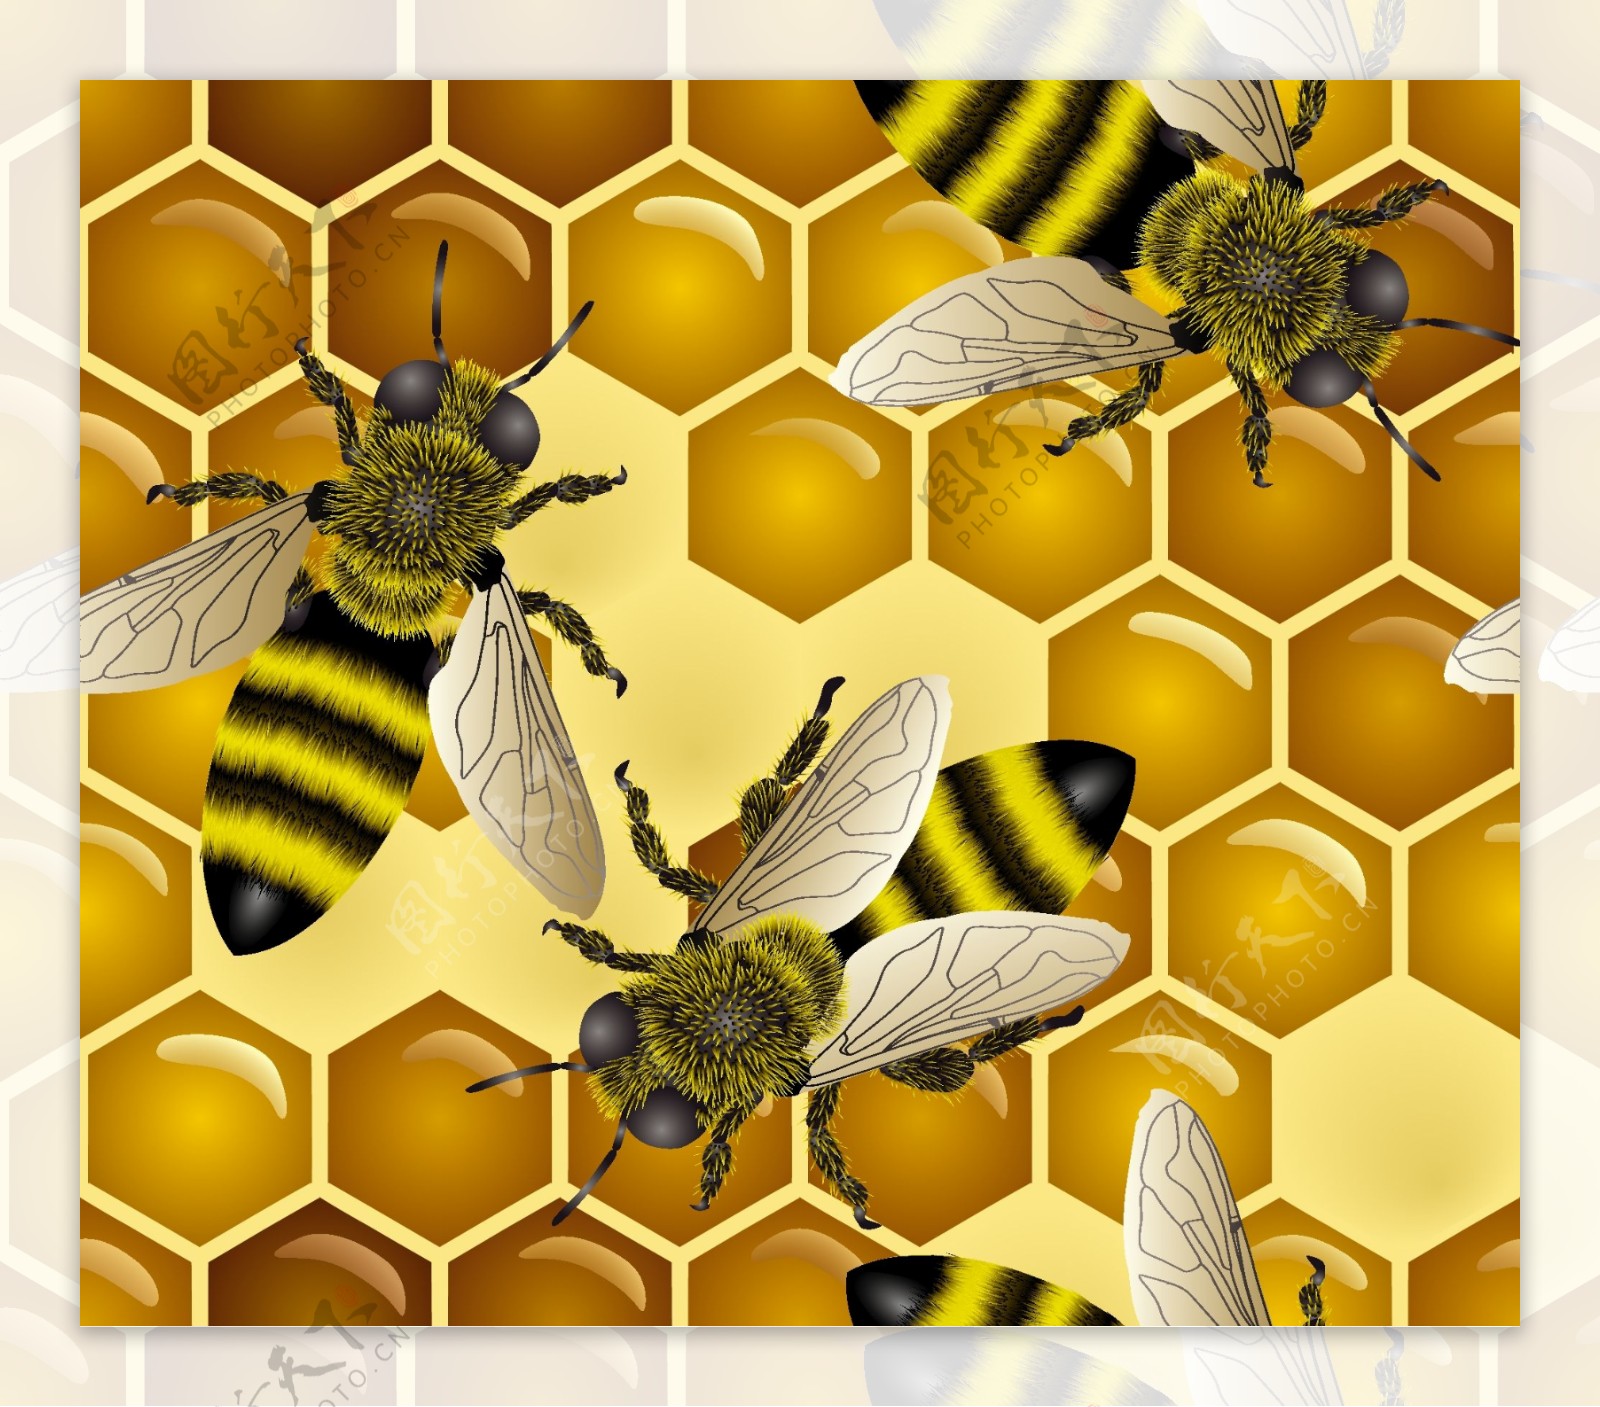 蜜蜂主题插画矢量素材